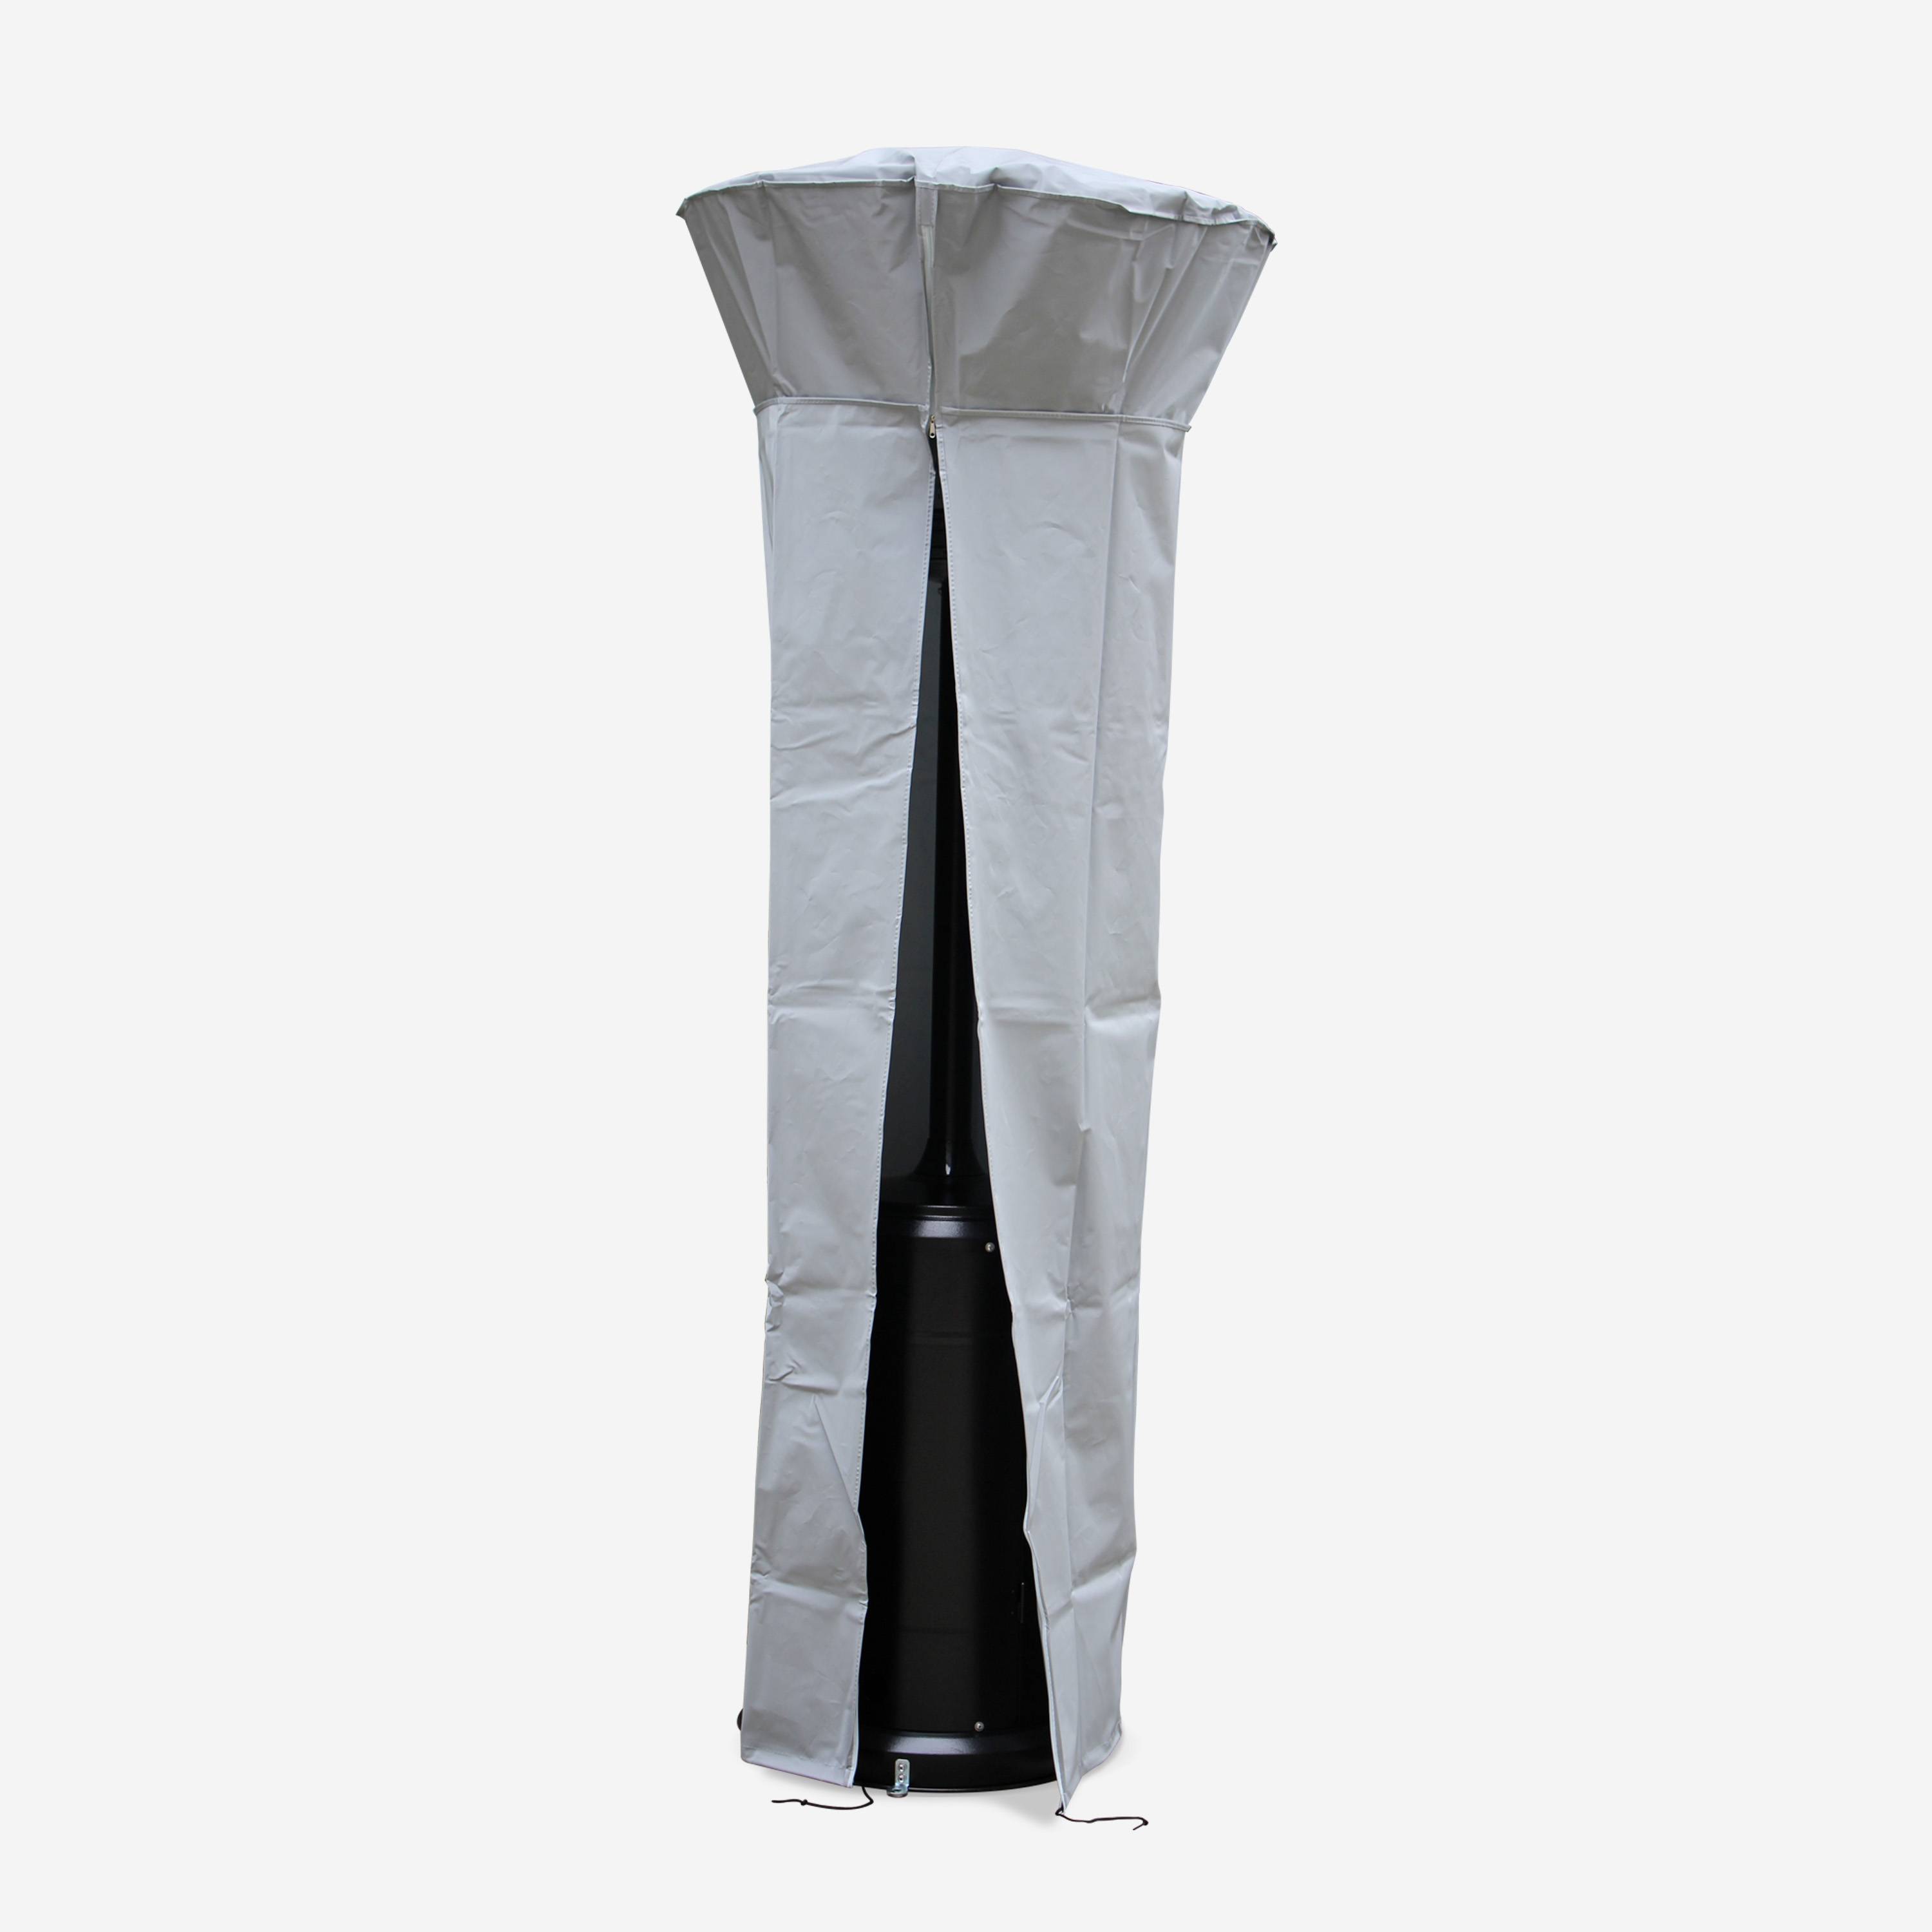 Chauffage d'extérieur gaz 12,5kW - Finland - Parasol chauffant gris réglable, porte en façade, roulettes et housse Photo2